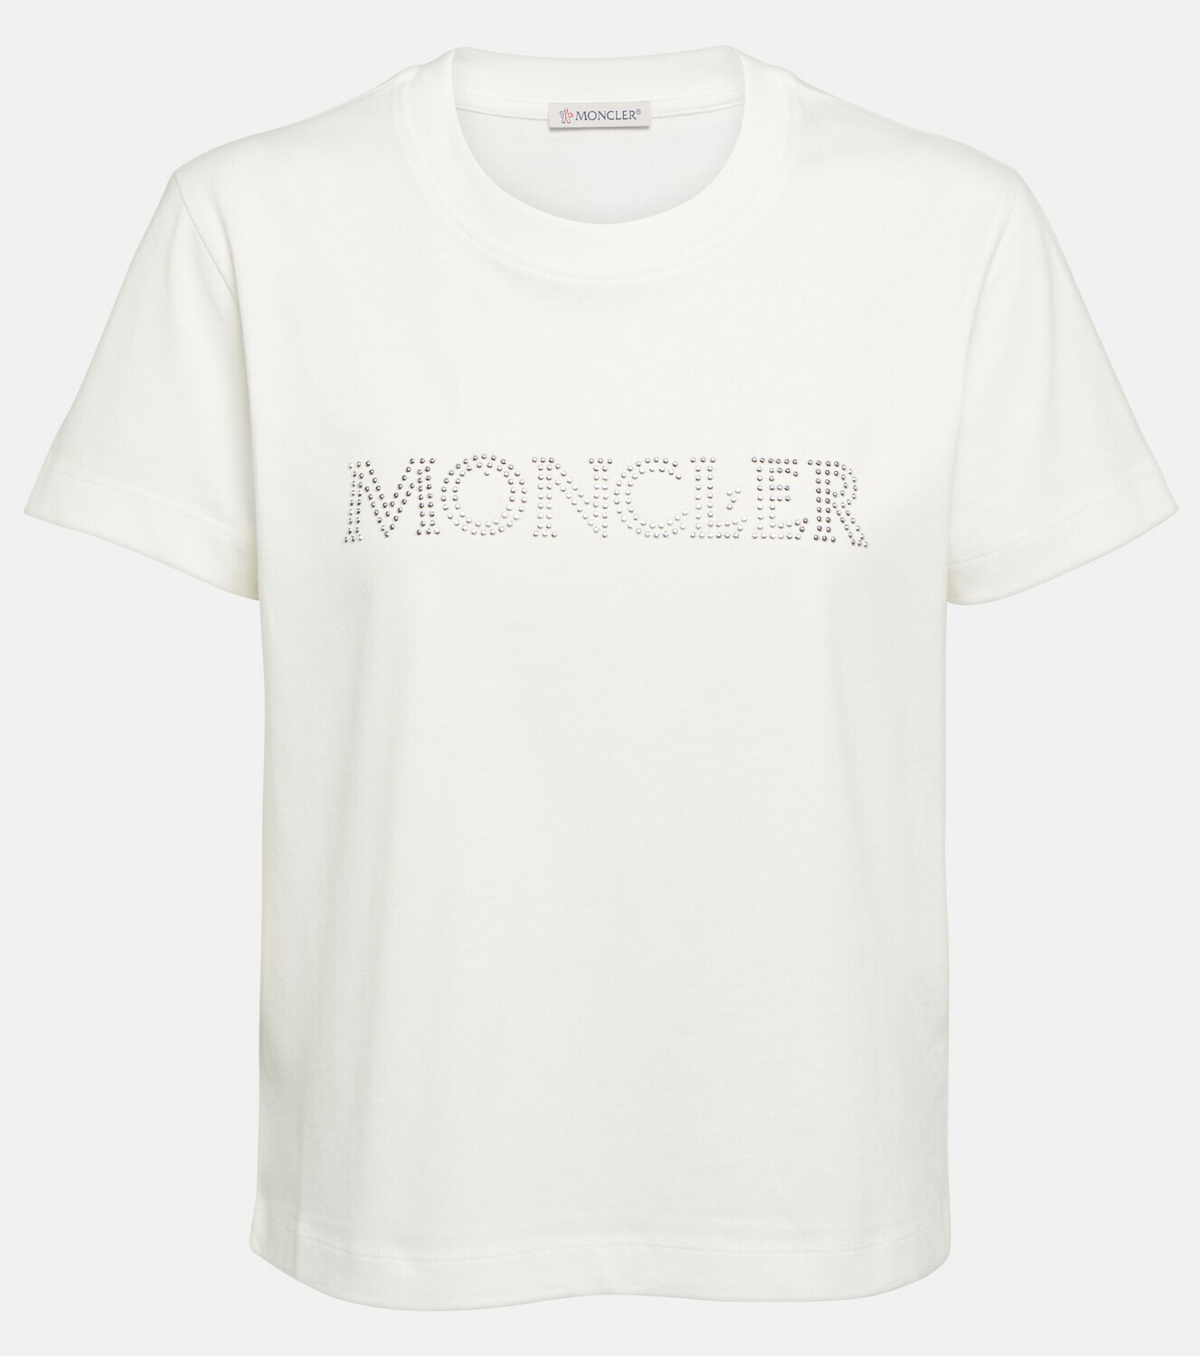 Moncler Lettering Logo T-Shirt Black at